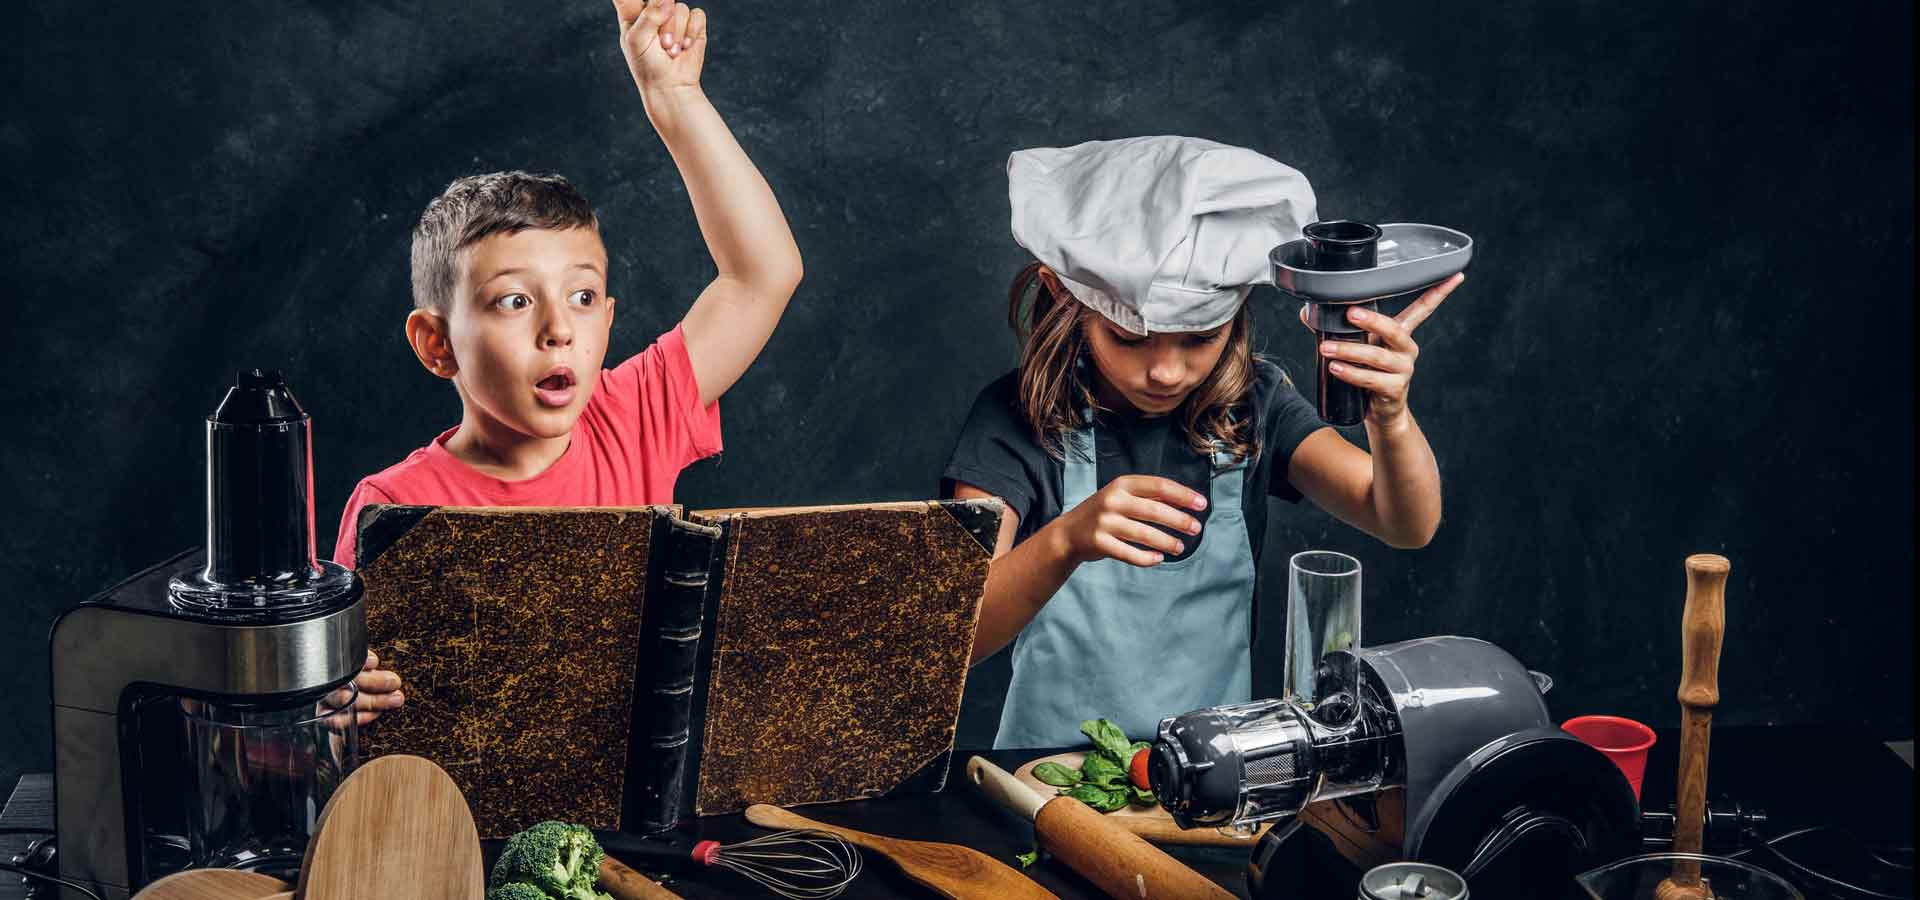 Zwei Kinder vor Utensilien aus der Küche. Ein Junge mit einem Kochbuch in der Hand, hat eine Idee. Ein Mädchen, mit einer Kochmütze auf dem Kopf, bedient eine Saftpresse.